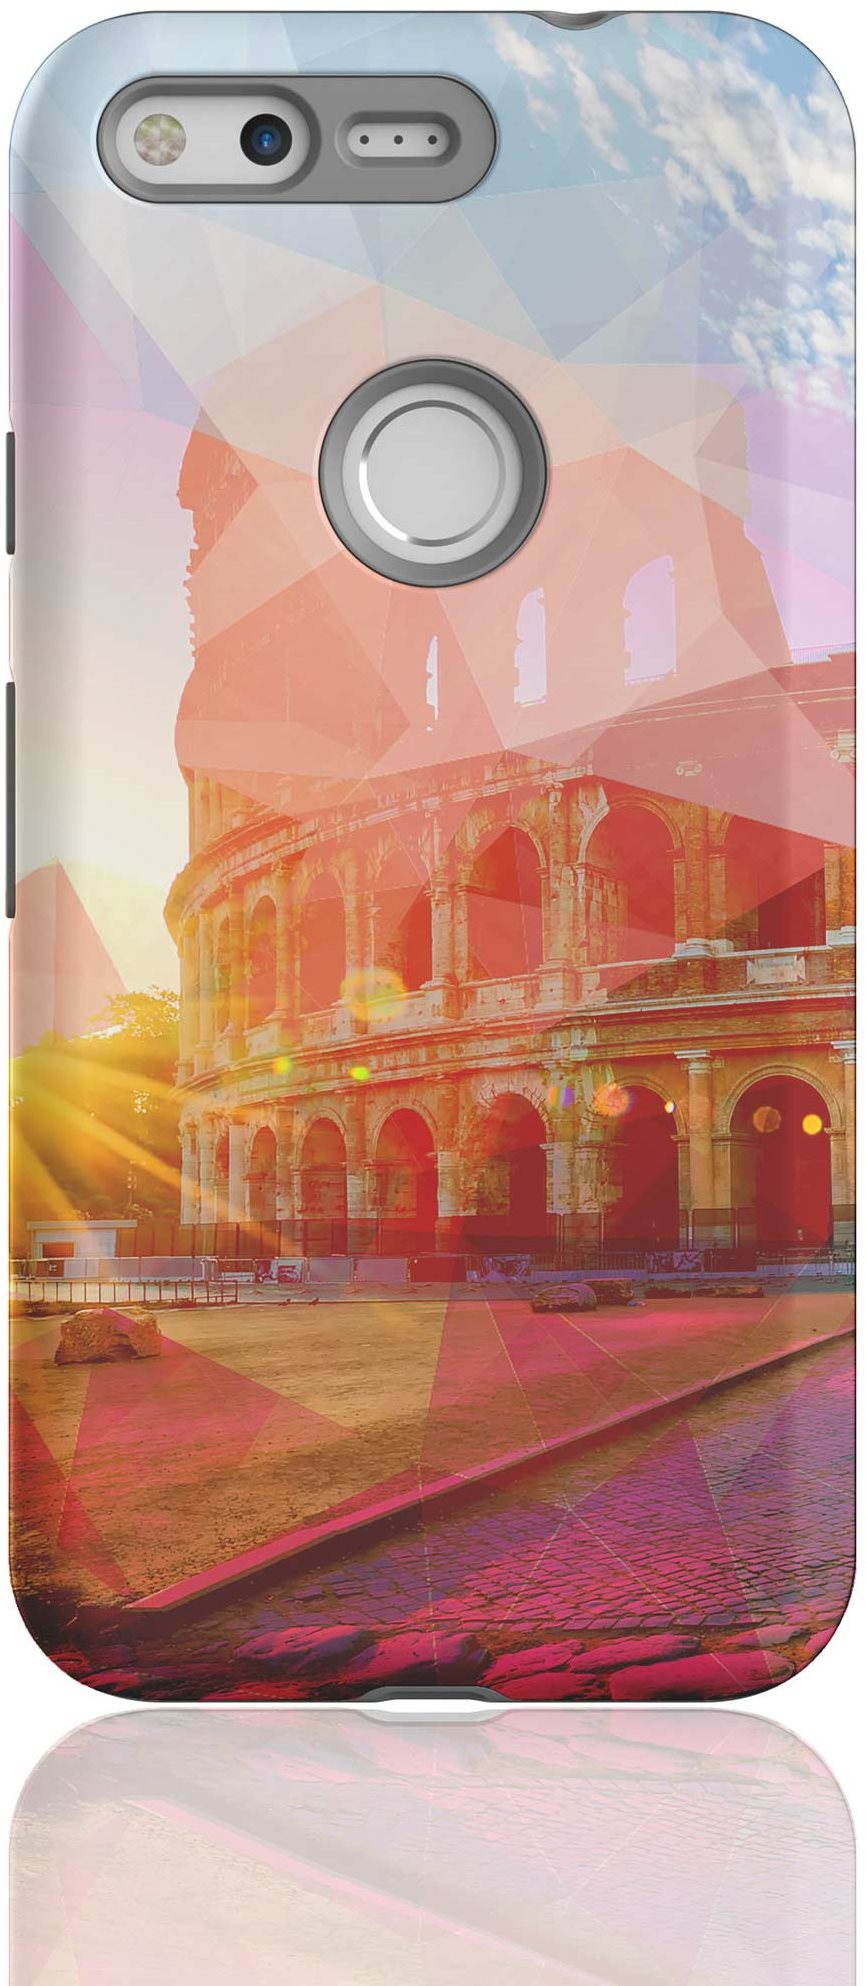 MojePouzdro "Colosseum" + védőszemüveg Google Pixel